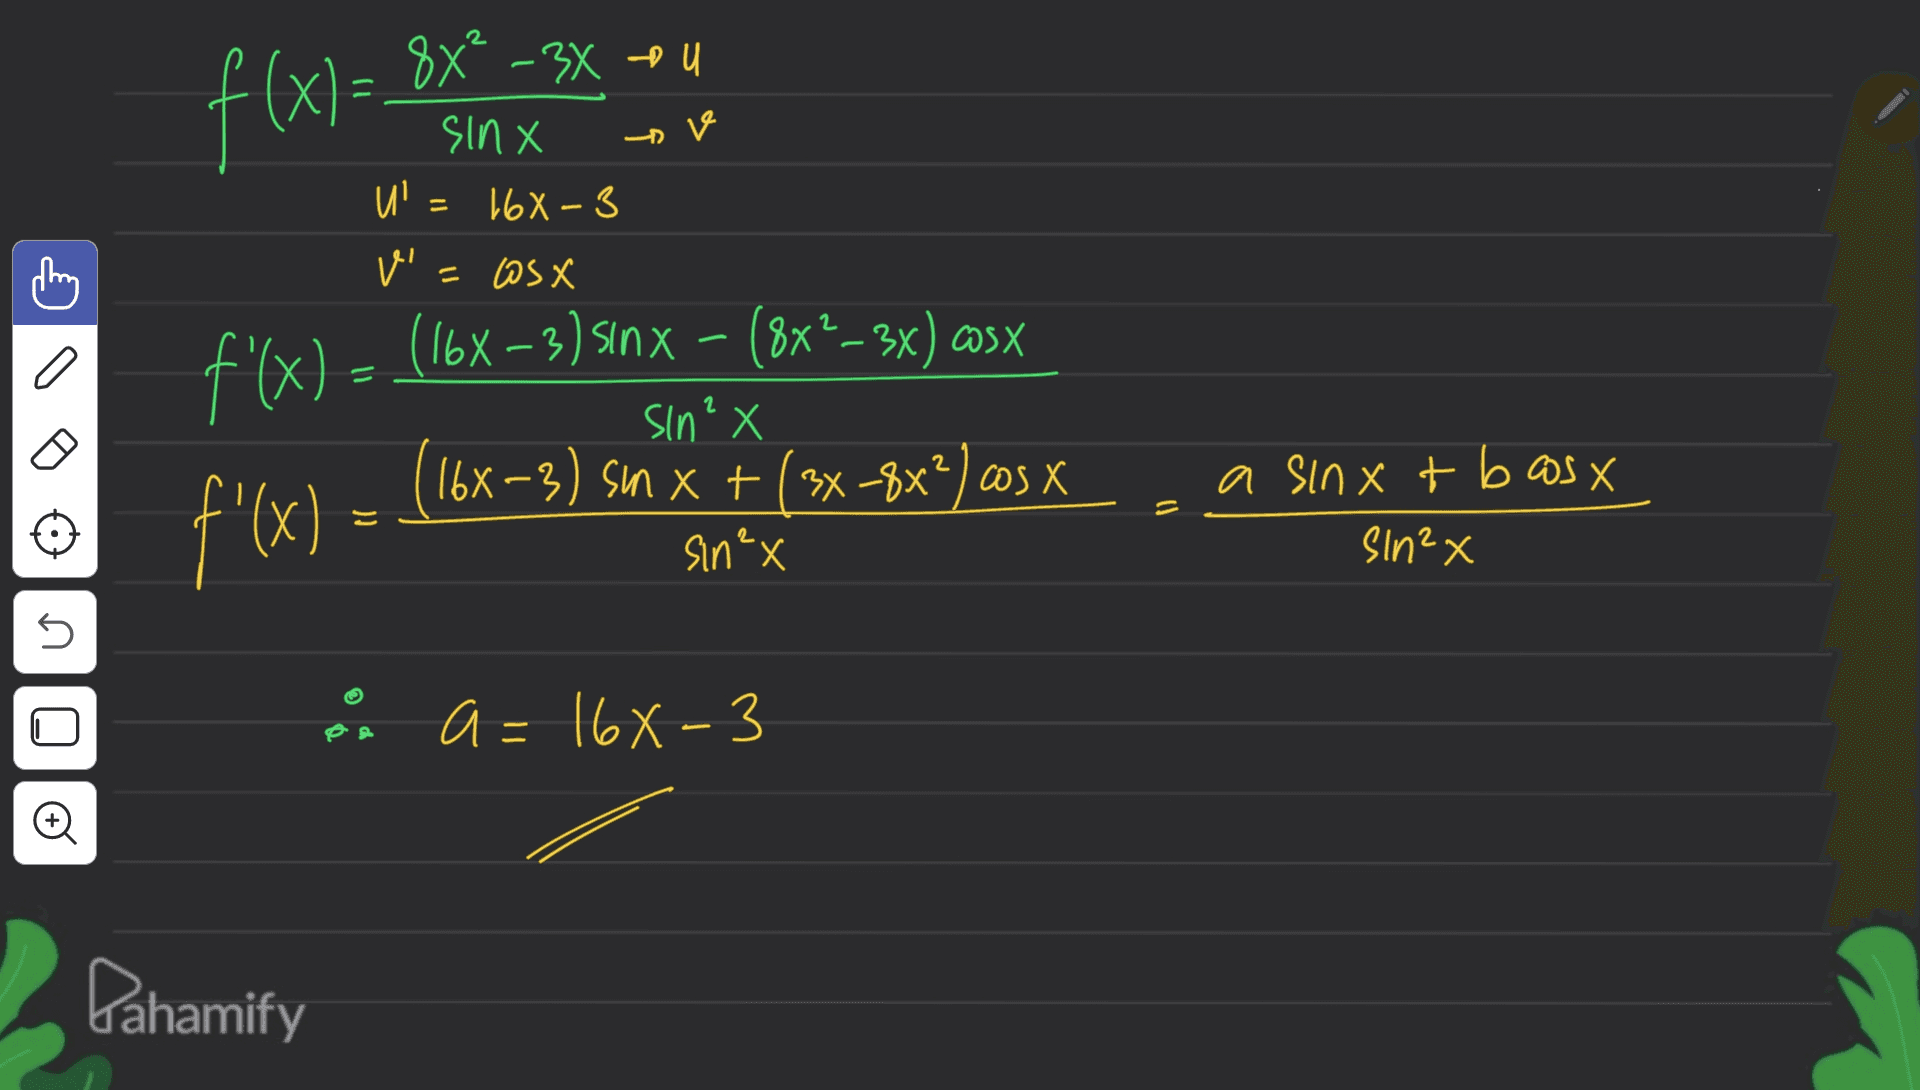 ha x-xX8 =(x) ora ₂X8 X UiS in X5C) = in = 168-3 ver ( a = f'(x) = (16x – 3) sınx - (8x*—3x) asx (16x-3) sin X + (x-3x63 X f'(x) = sin? X 2 a sinxt bosx = - sin²x sln²x s s o Đ De a=168-3 Dahamify 